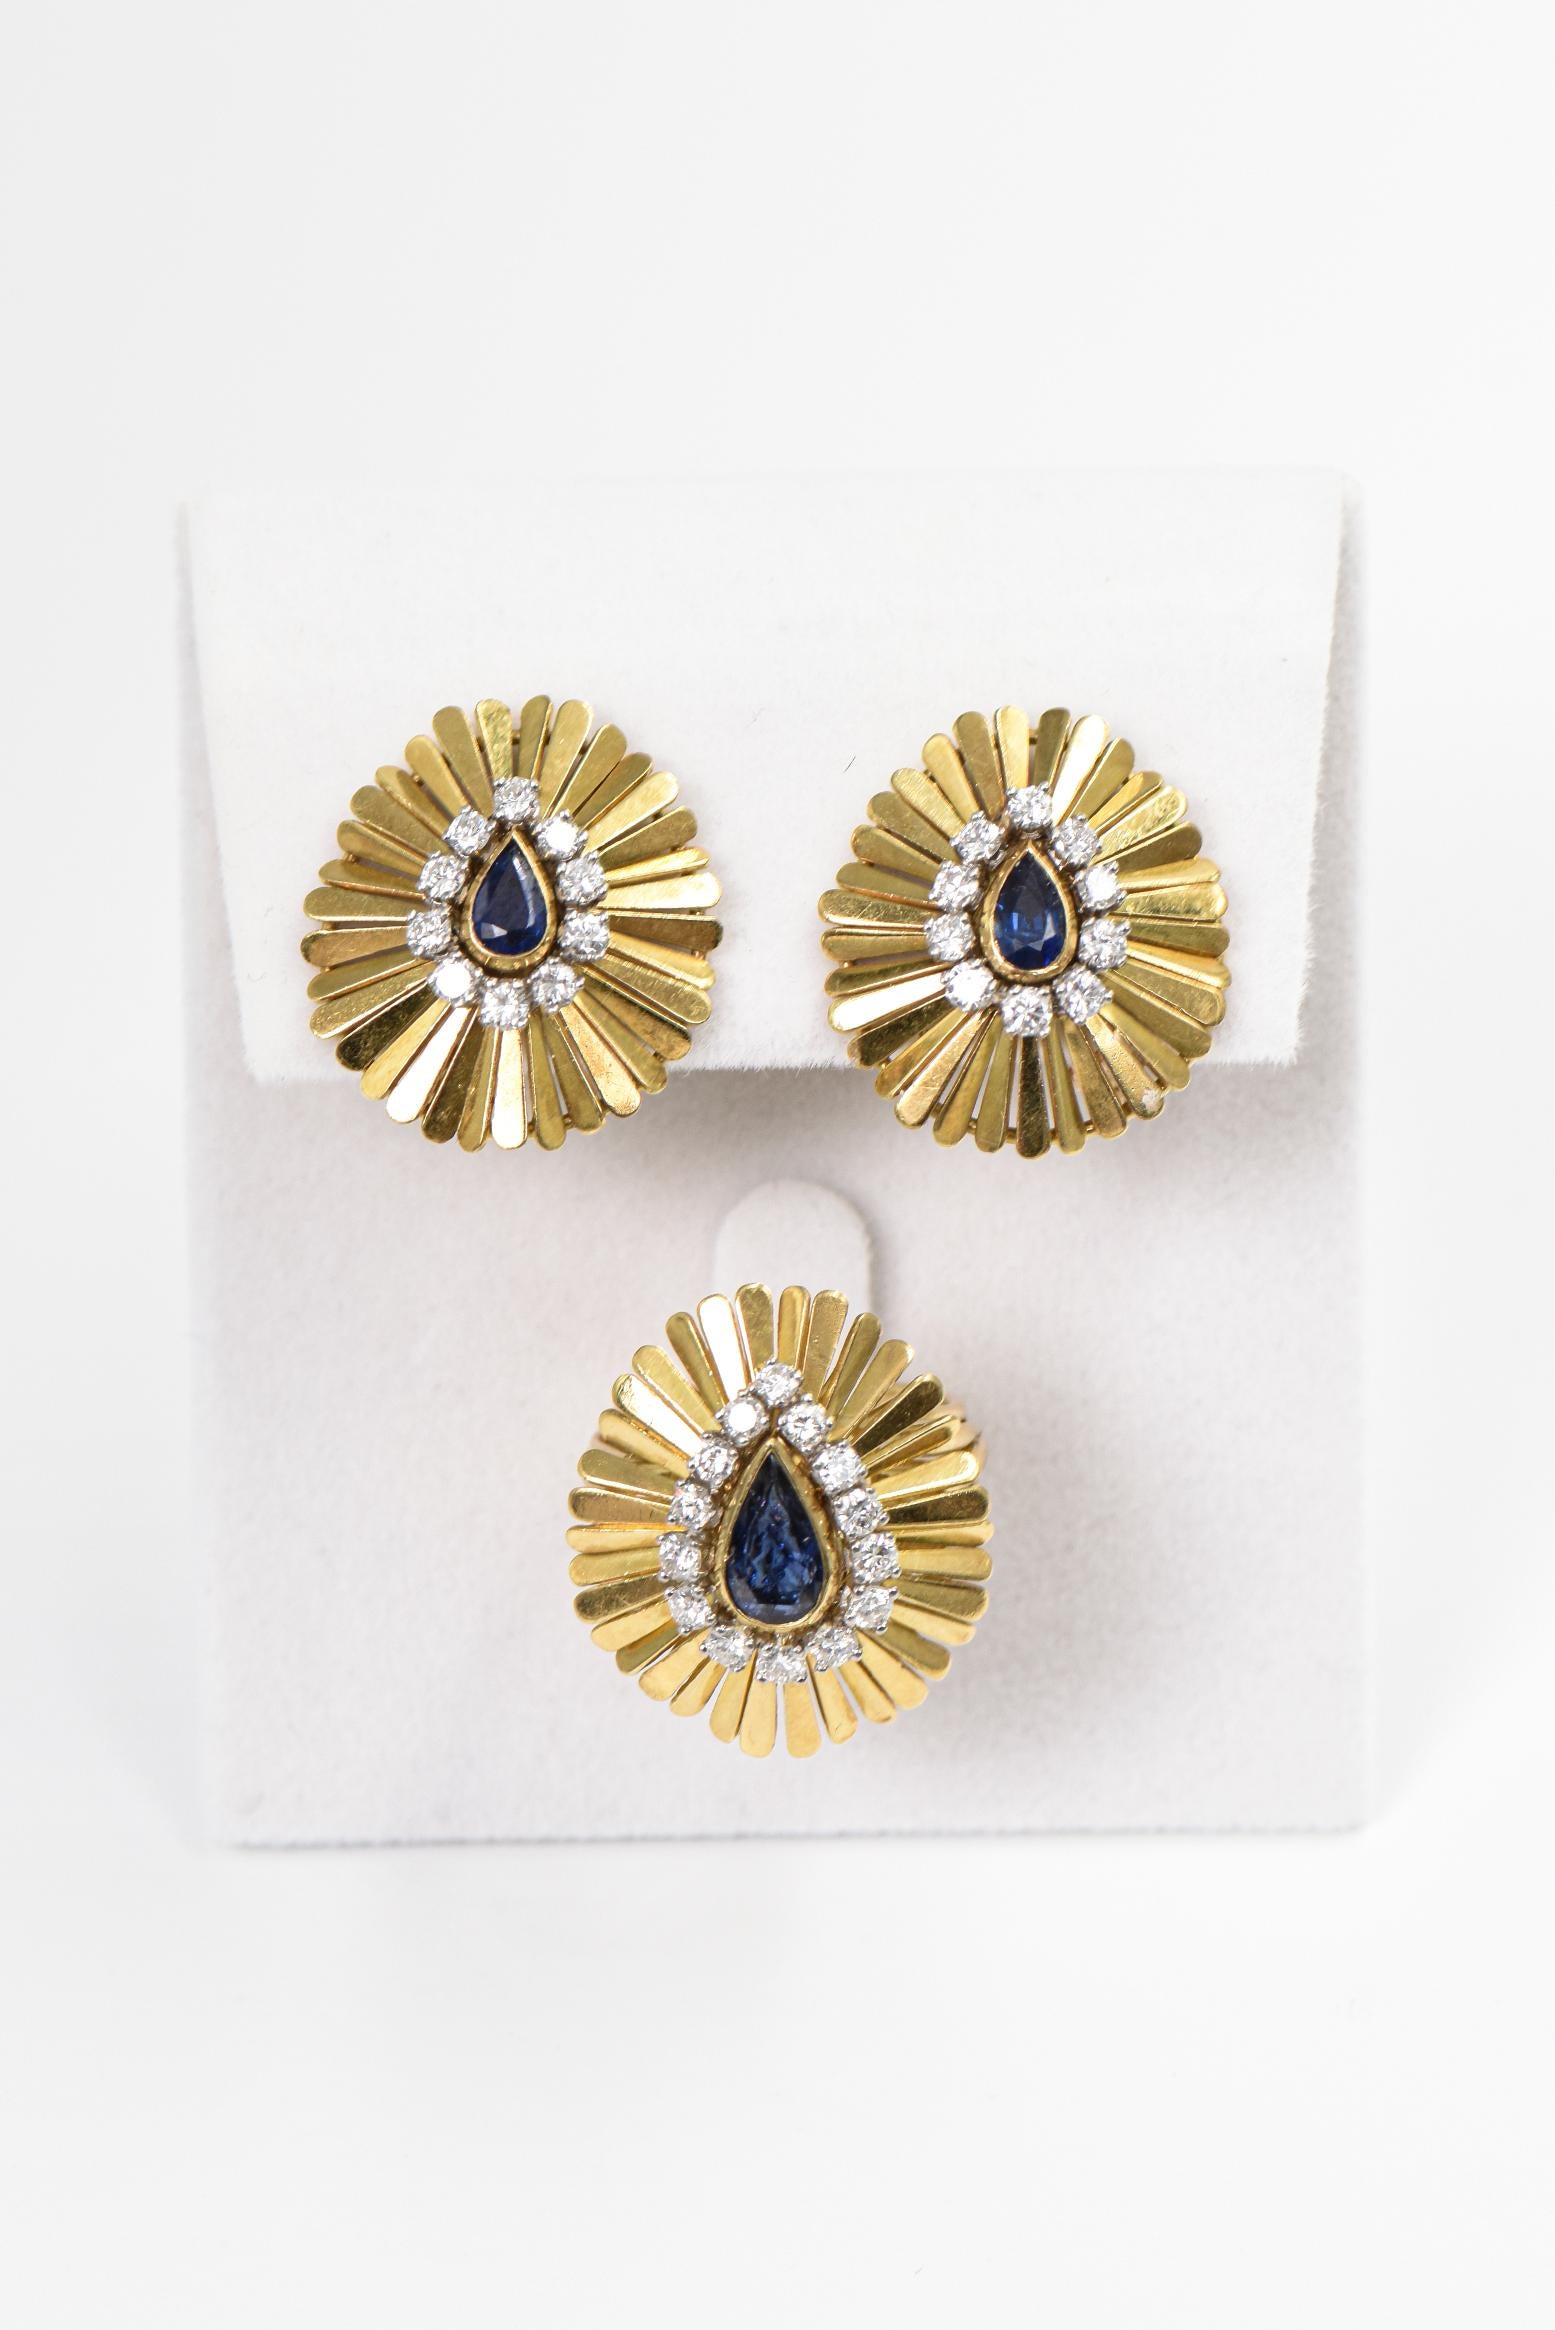 1950s clip on earrings